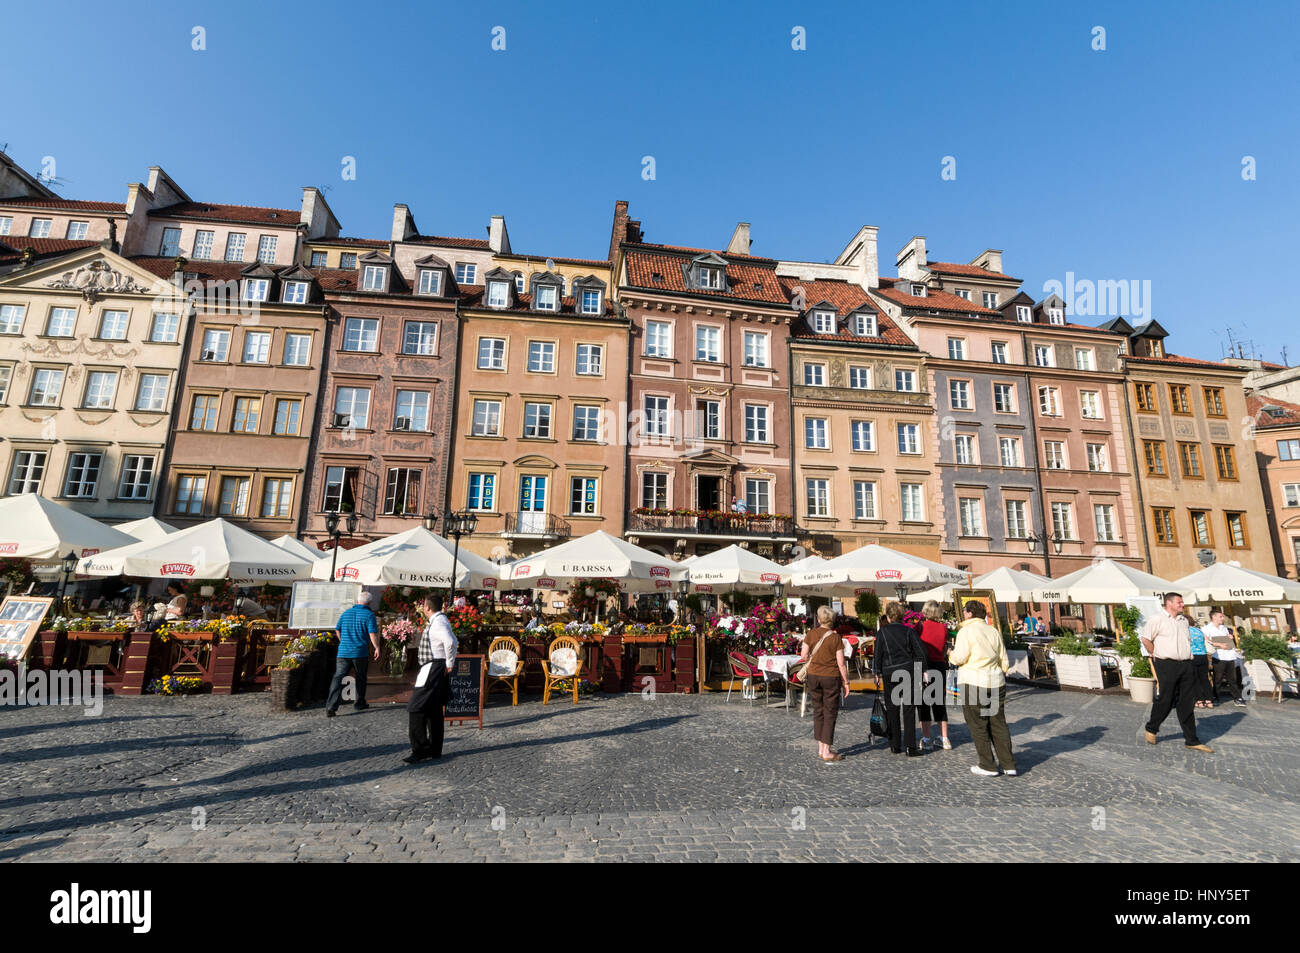 El Casco Antiguo de Varsovia Market Place es una plaza rodeada de restaurantes, cafés y tiendas de souvenirs. Los edificios son una mezcla de estilo gótico,Renaissanc Foto de stock